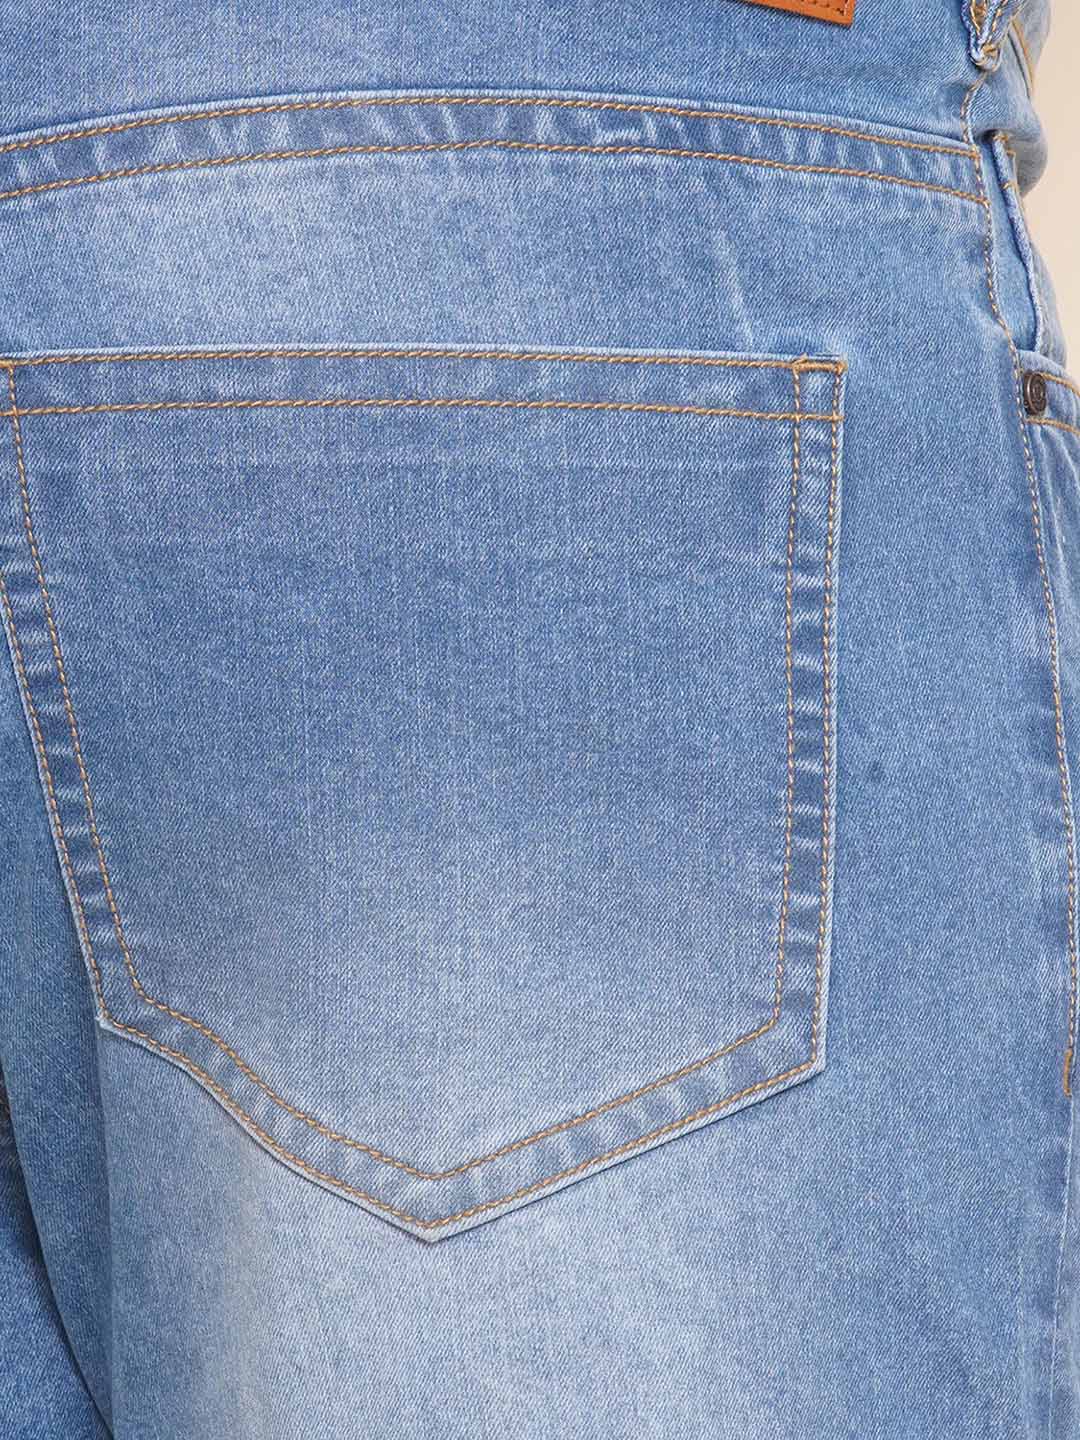 bottomwear/jeans/EJPJ25101/ejpj25101-2.jpg